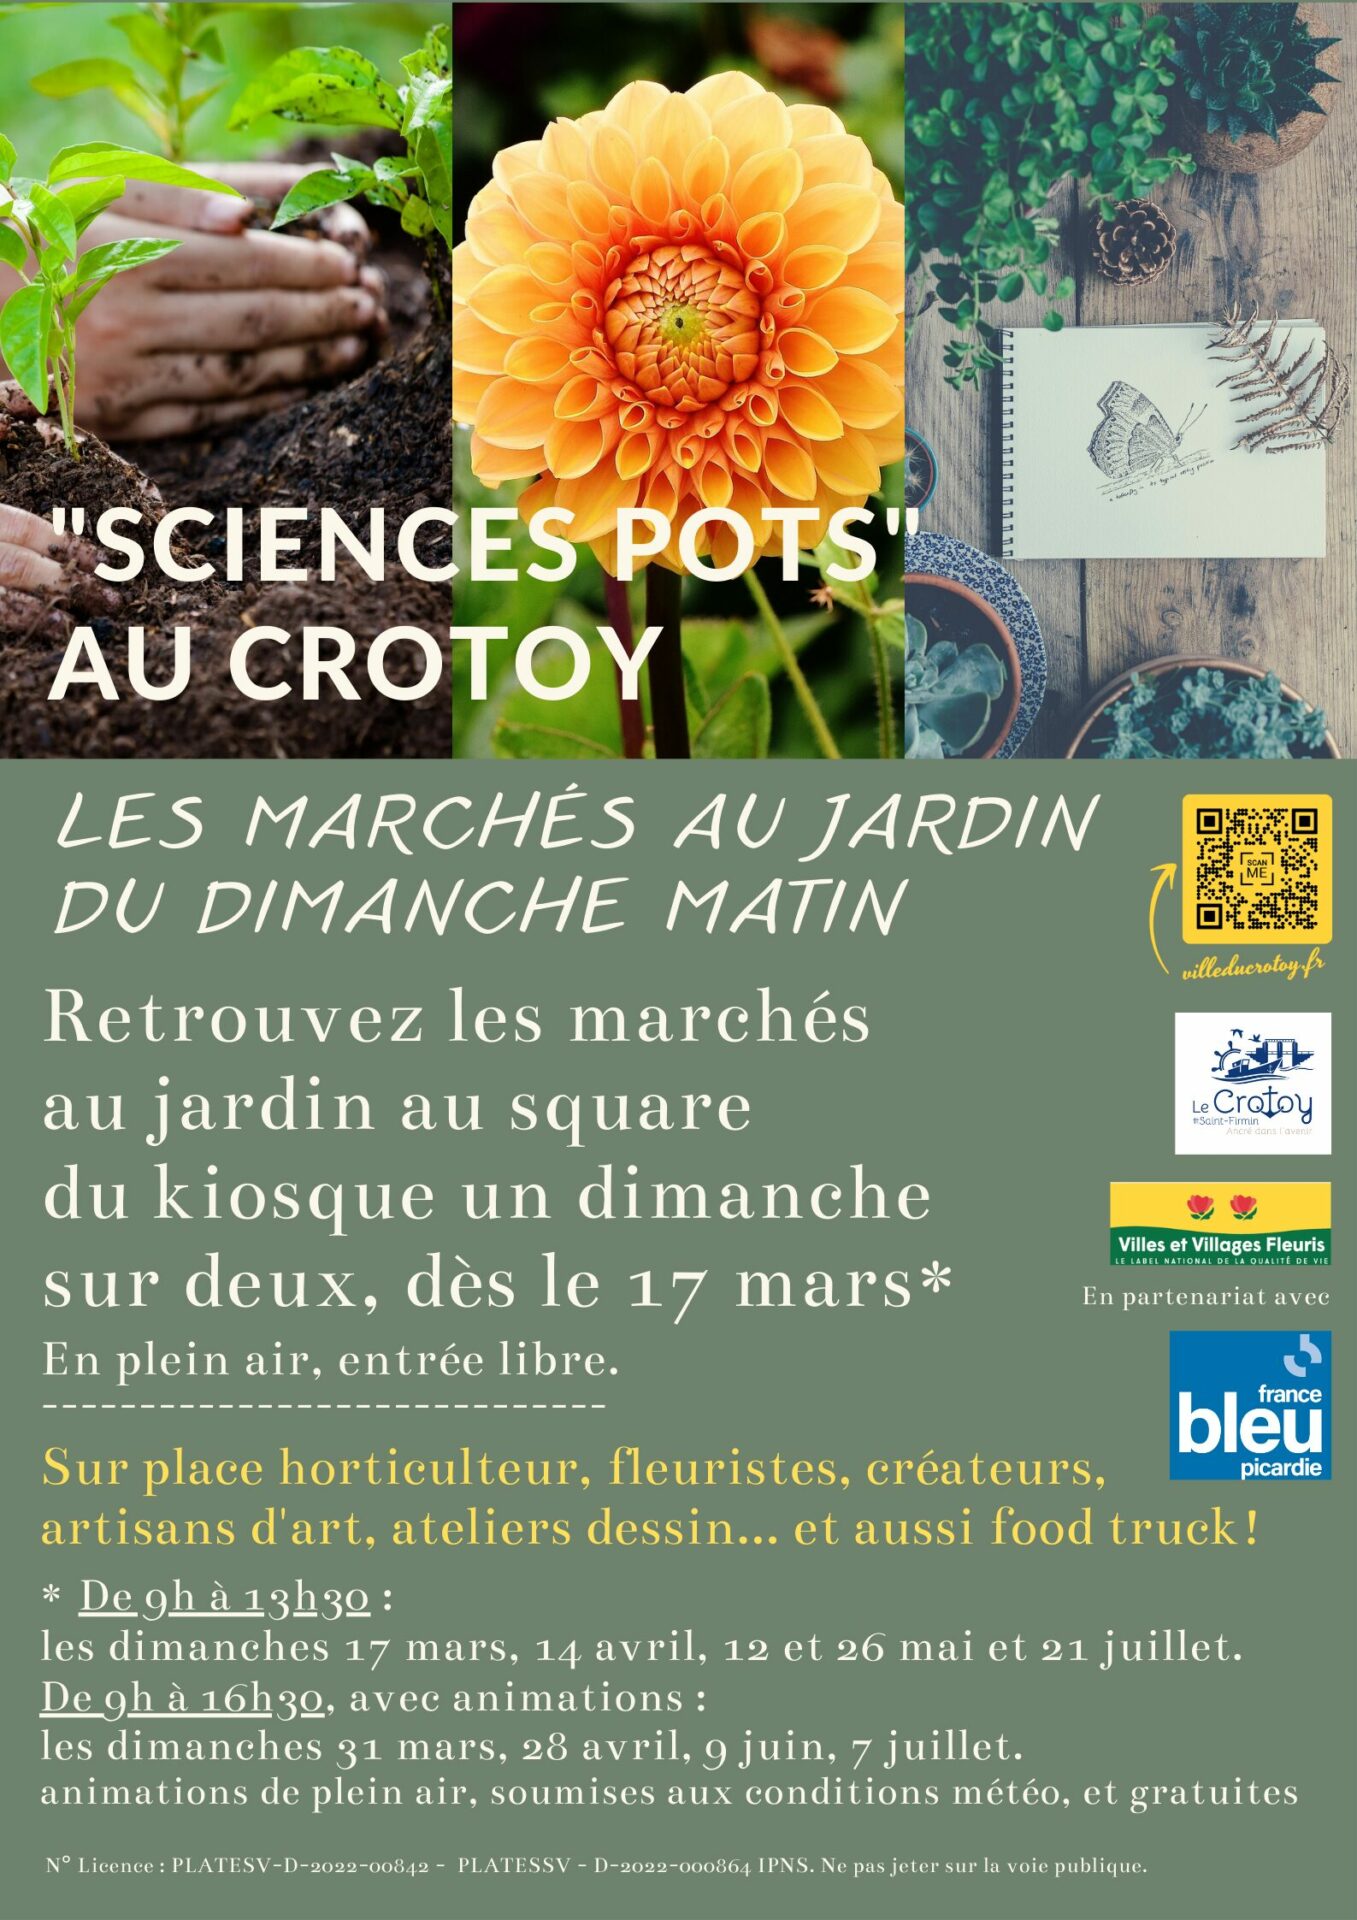 Ce dimanche 28 avril : Sciences pots spécial “livres au jardin”, avec l’auteure du guide des jardins remarquables des Hauts-de-France